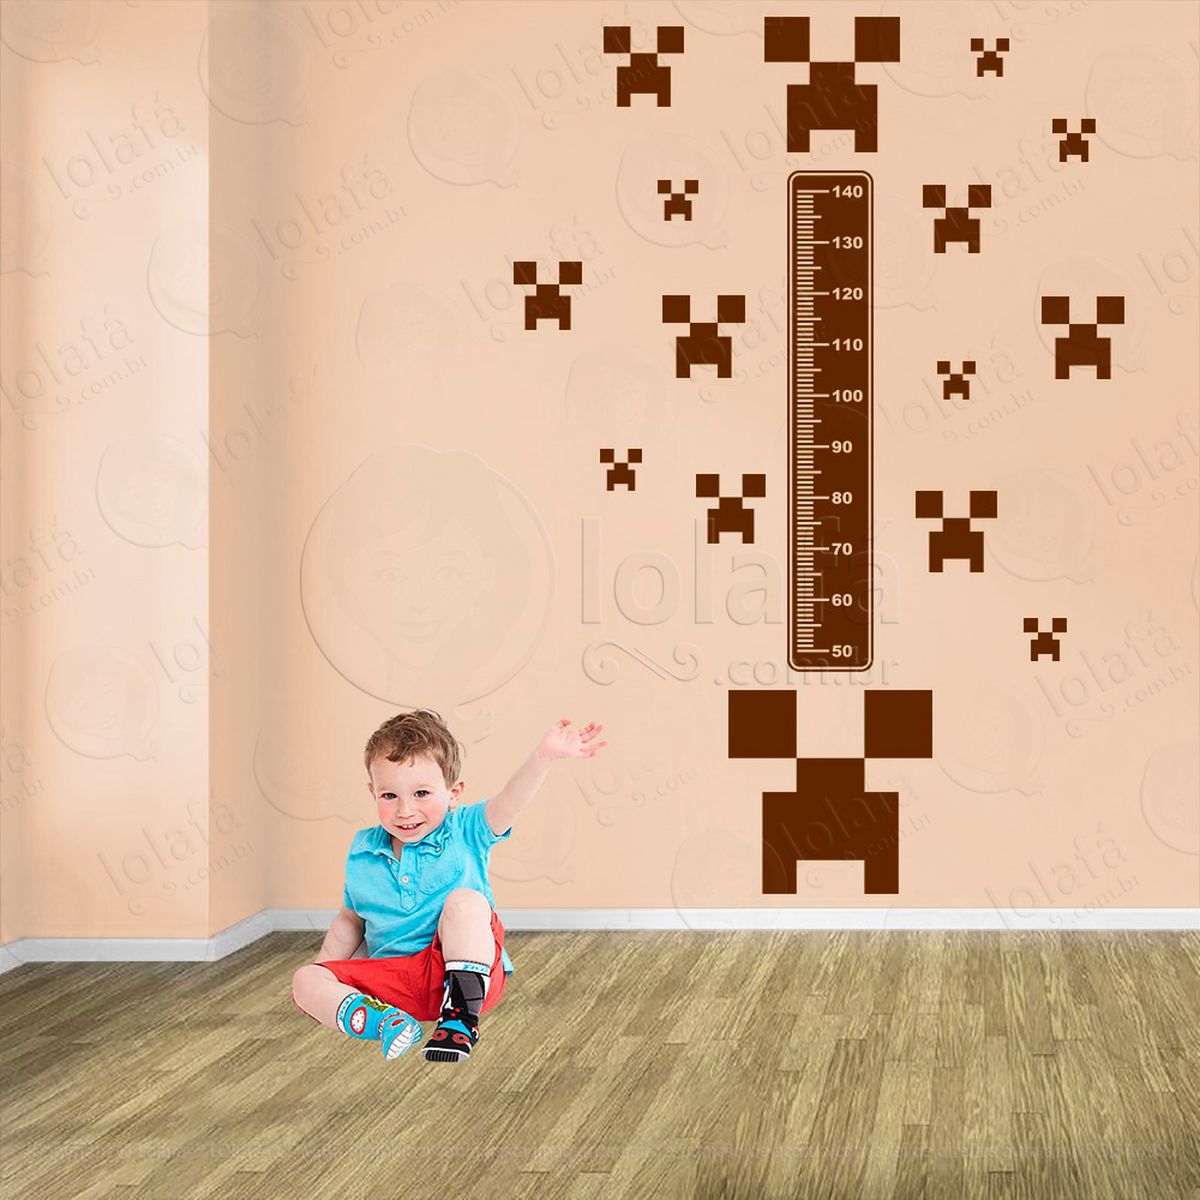 minecraft e minecraft adesivo régua de crescimento infantil, medidor de altura para quarto, porta e parede - mod:728